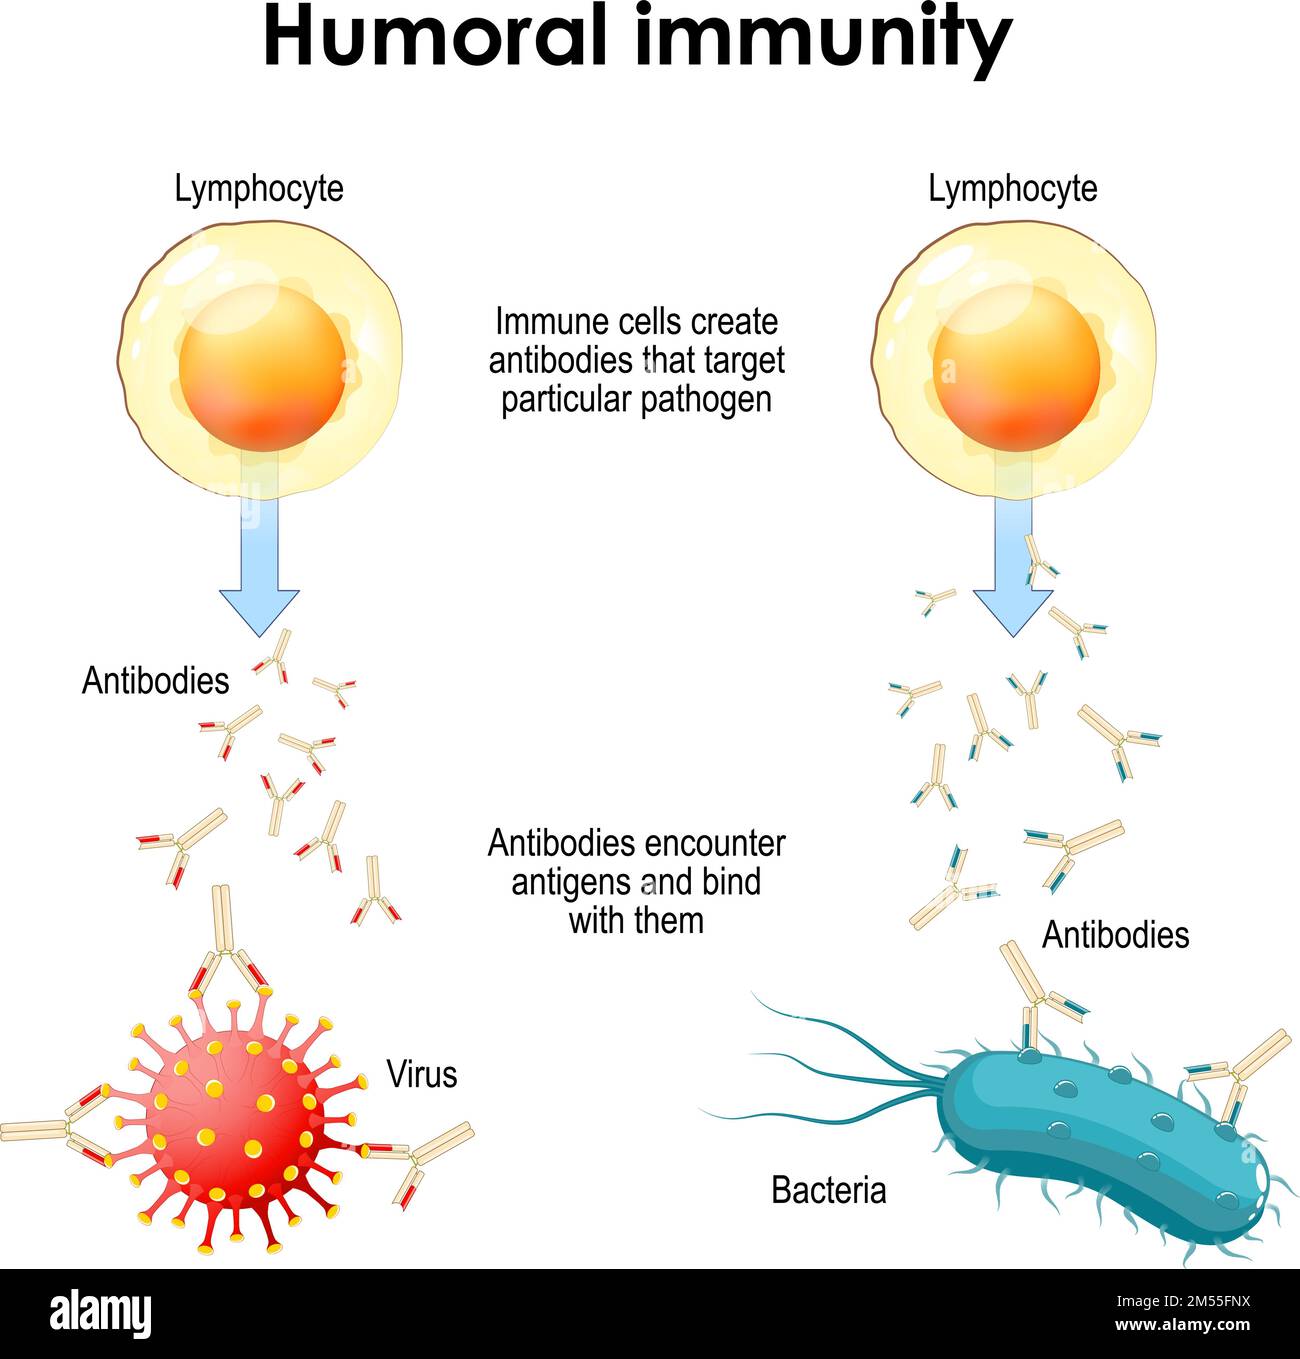 immunité humorale. Bactéries, virus, lymphocytes et anticorps. Les cellules immunitaires créent des anticorps qui ciblent un agent pathogène particulier Illustration de Vecteur